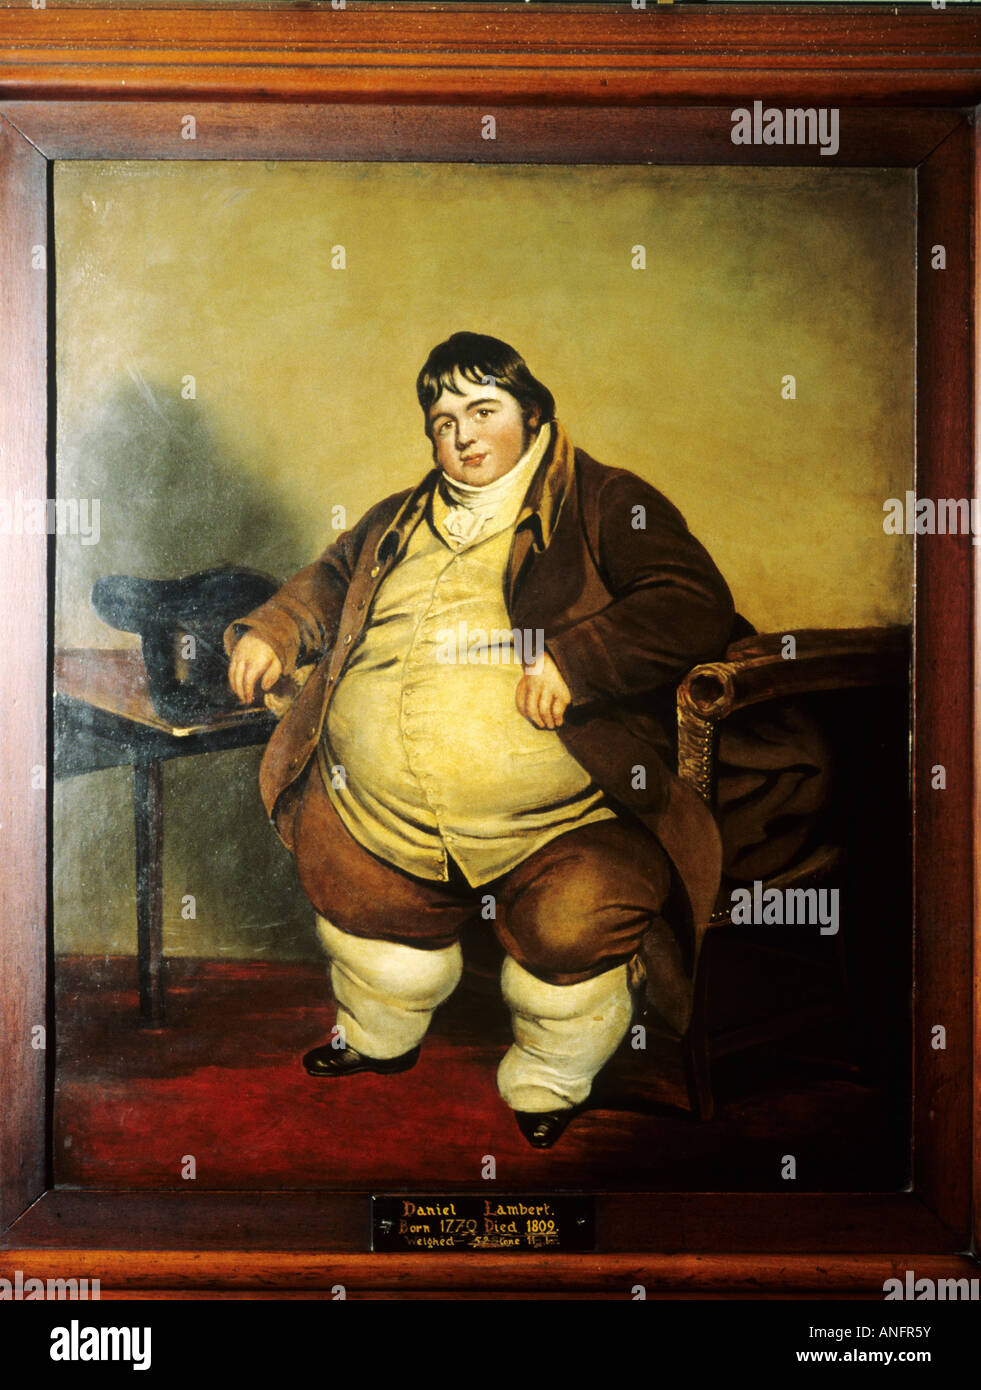 Daniel Lambert célèbre du 18ème siècle anglais obèses pierres 52 poids 11 livres de matières grasses bien connu a célébré l'obésité Banque D'Images